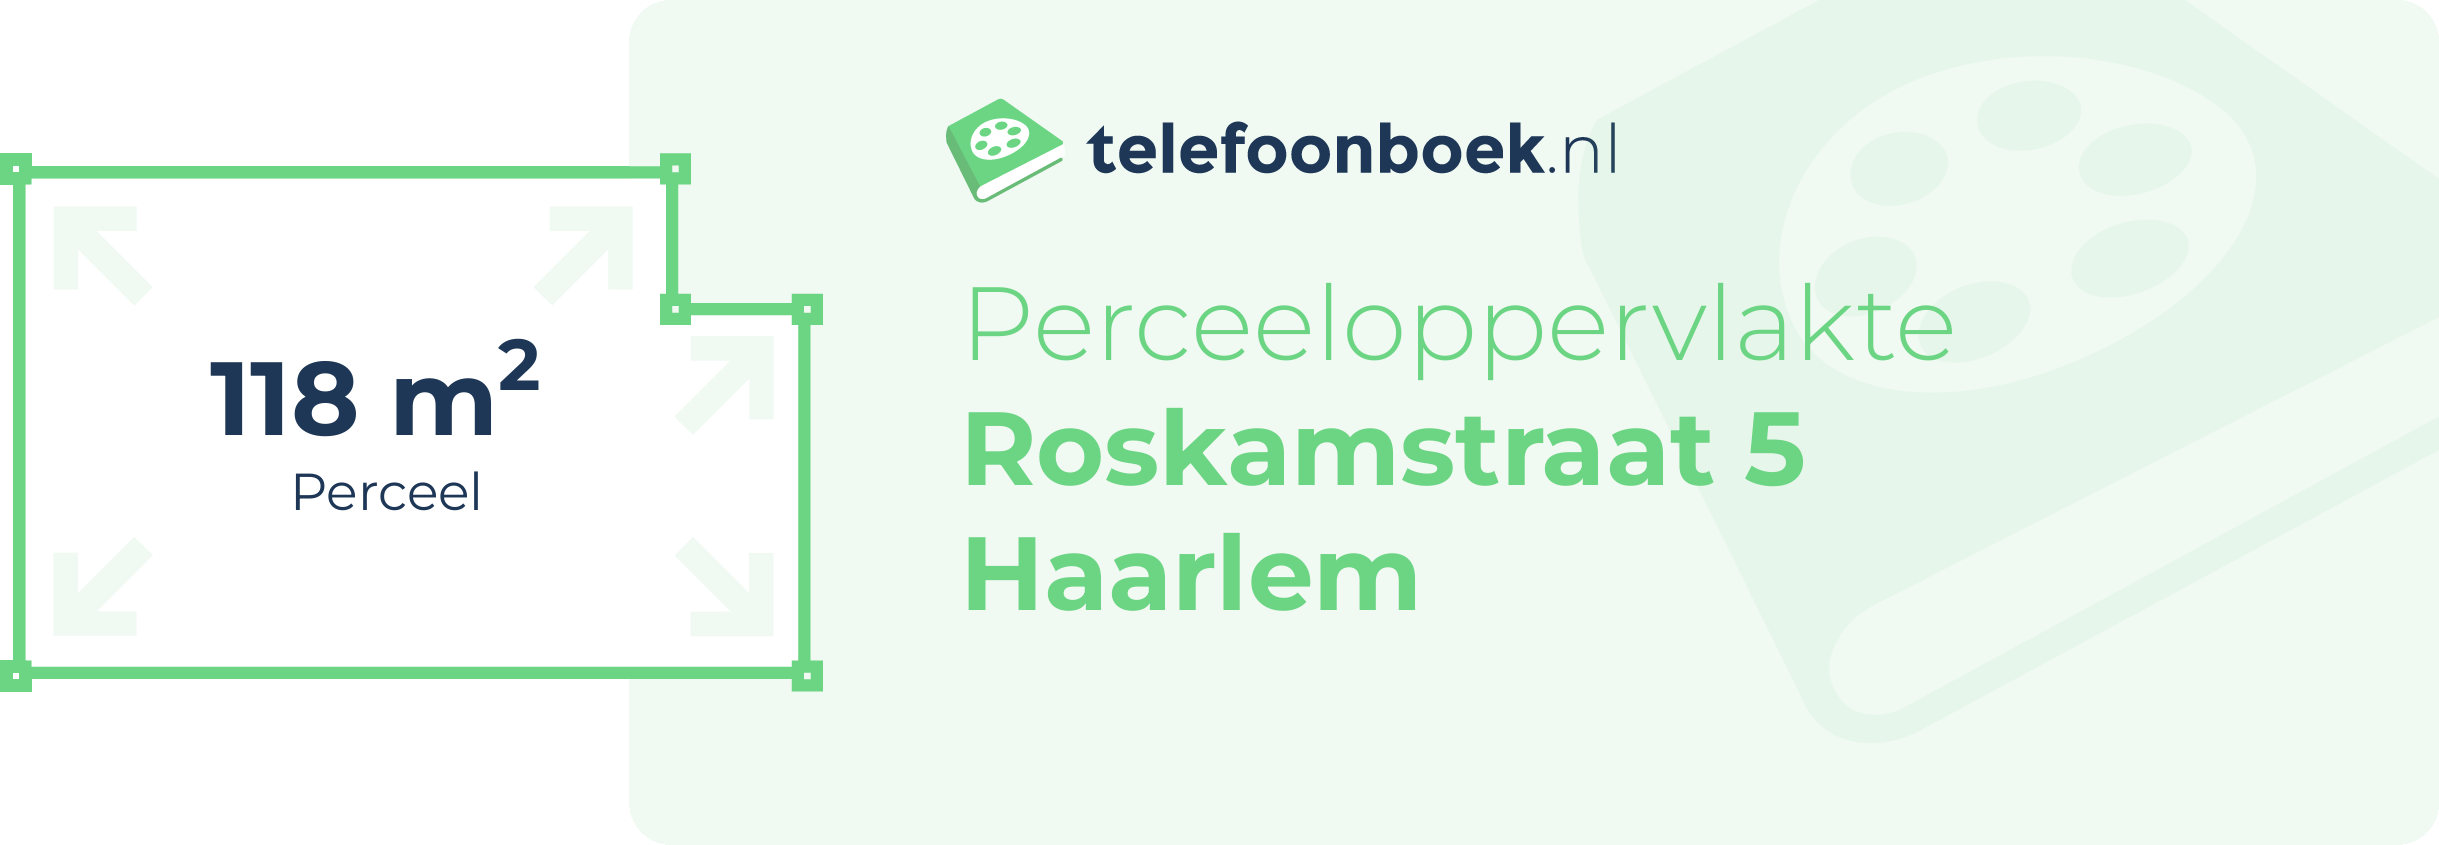 Perceeloppervlakte Roskamstraat 5 Haarlem